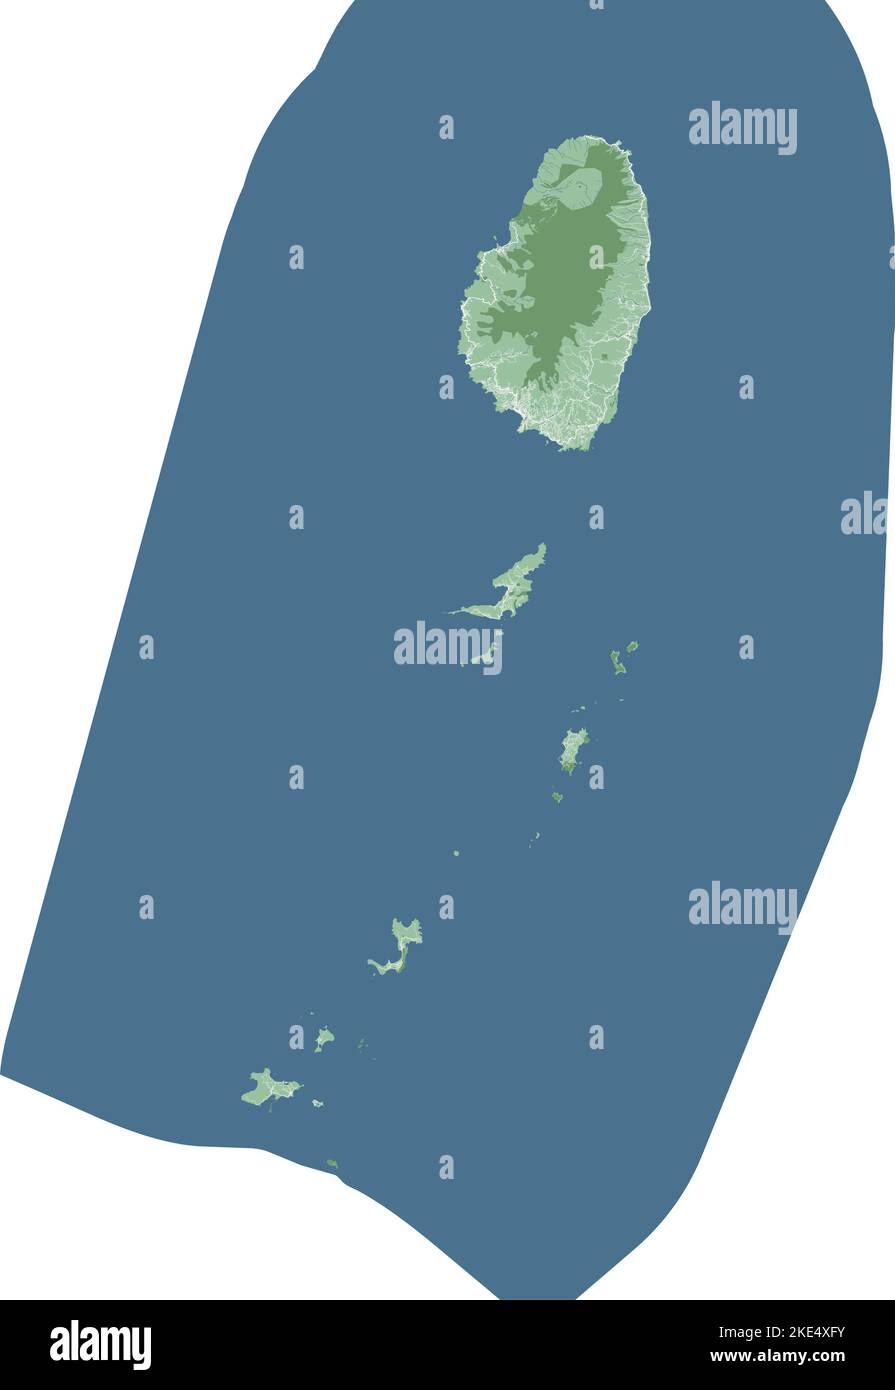 Carte de Saint-Vincent-et-les Grenadines, pays insulaire des Caraïbes. Carte détaillée avec frontière administrative, bâtiments, mer et forêts, villes et routes. Illustration de Vecteur